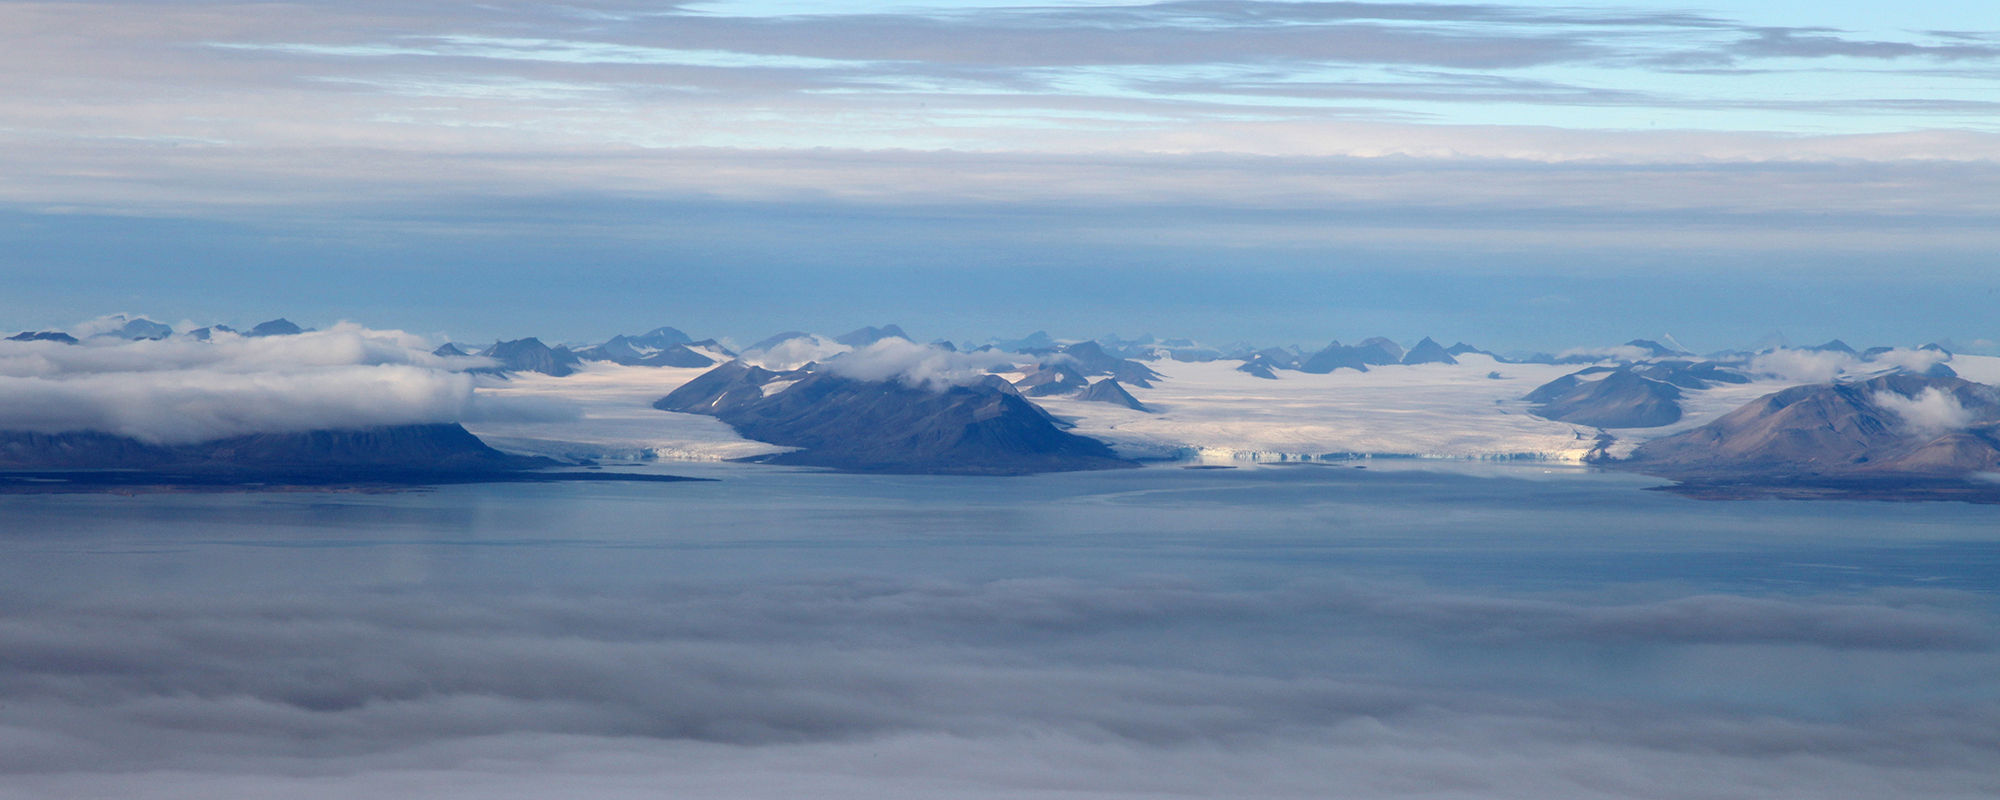 Gletscher und Nordenskiöldfjellet mit Fjord auf Spitzbergen